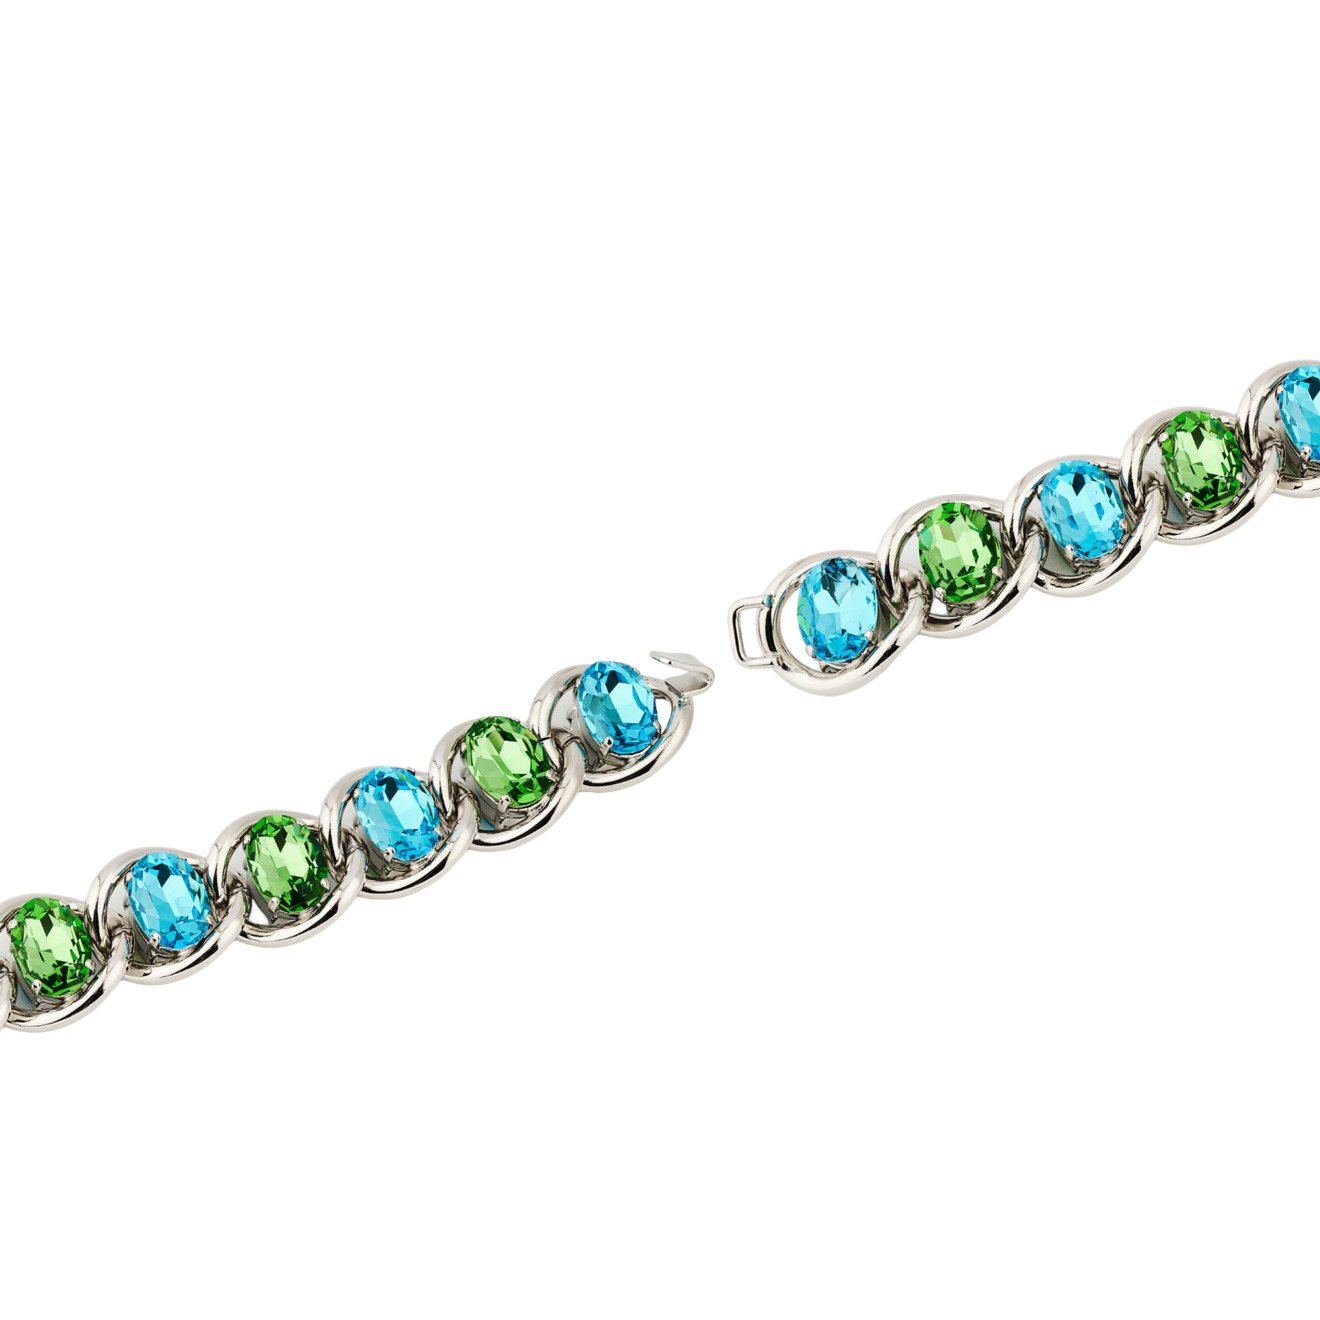 Marni Браслет-цепь с зелено-голубыми кристаллами marni золотистый браслет с черным обсидианом